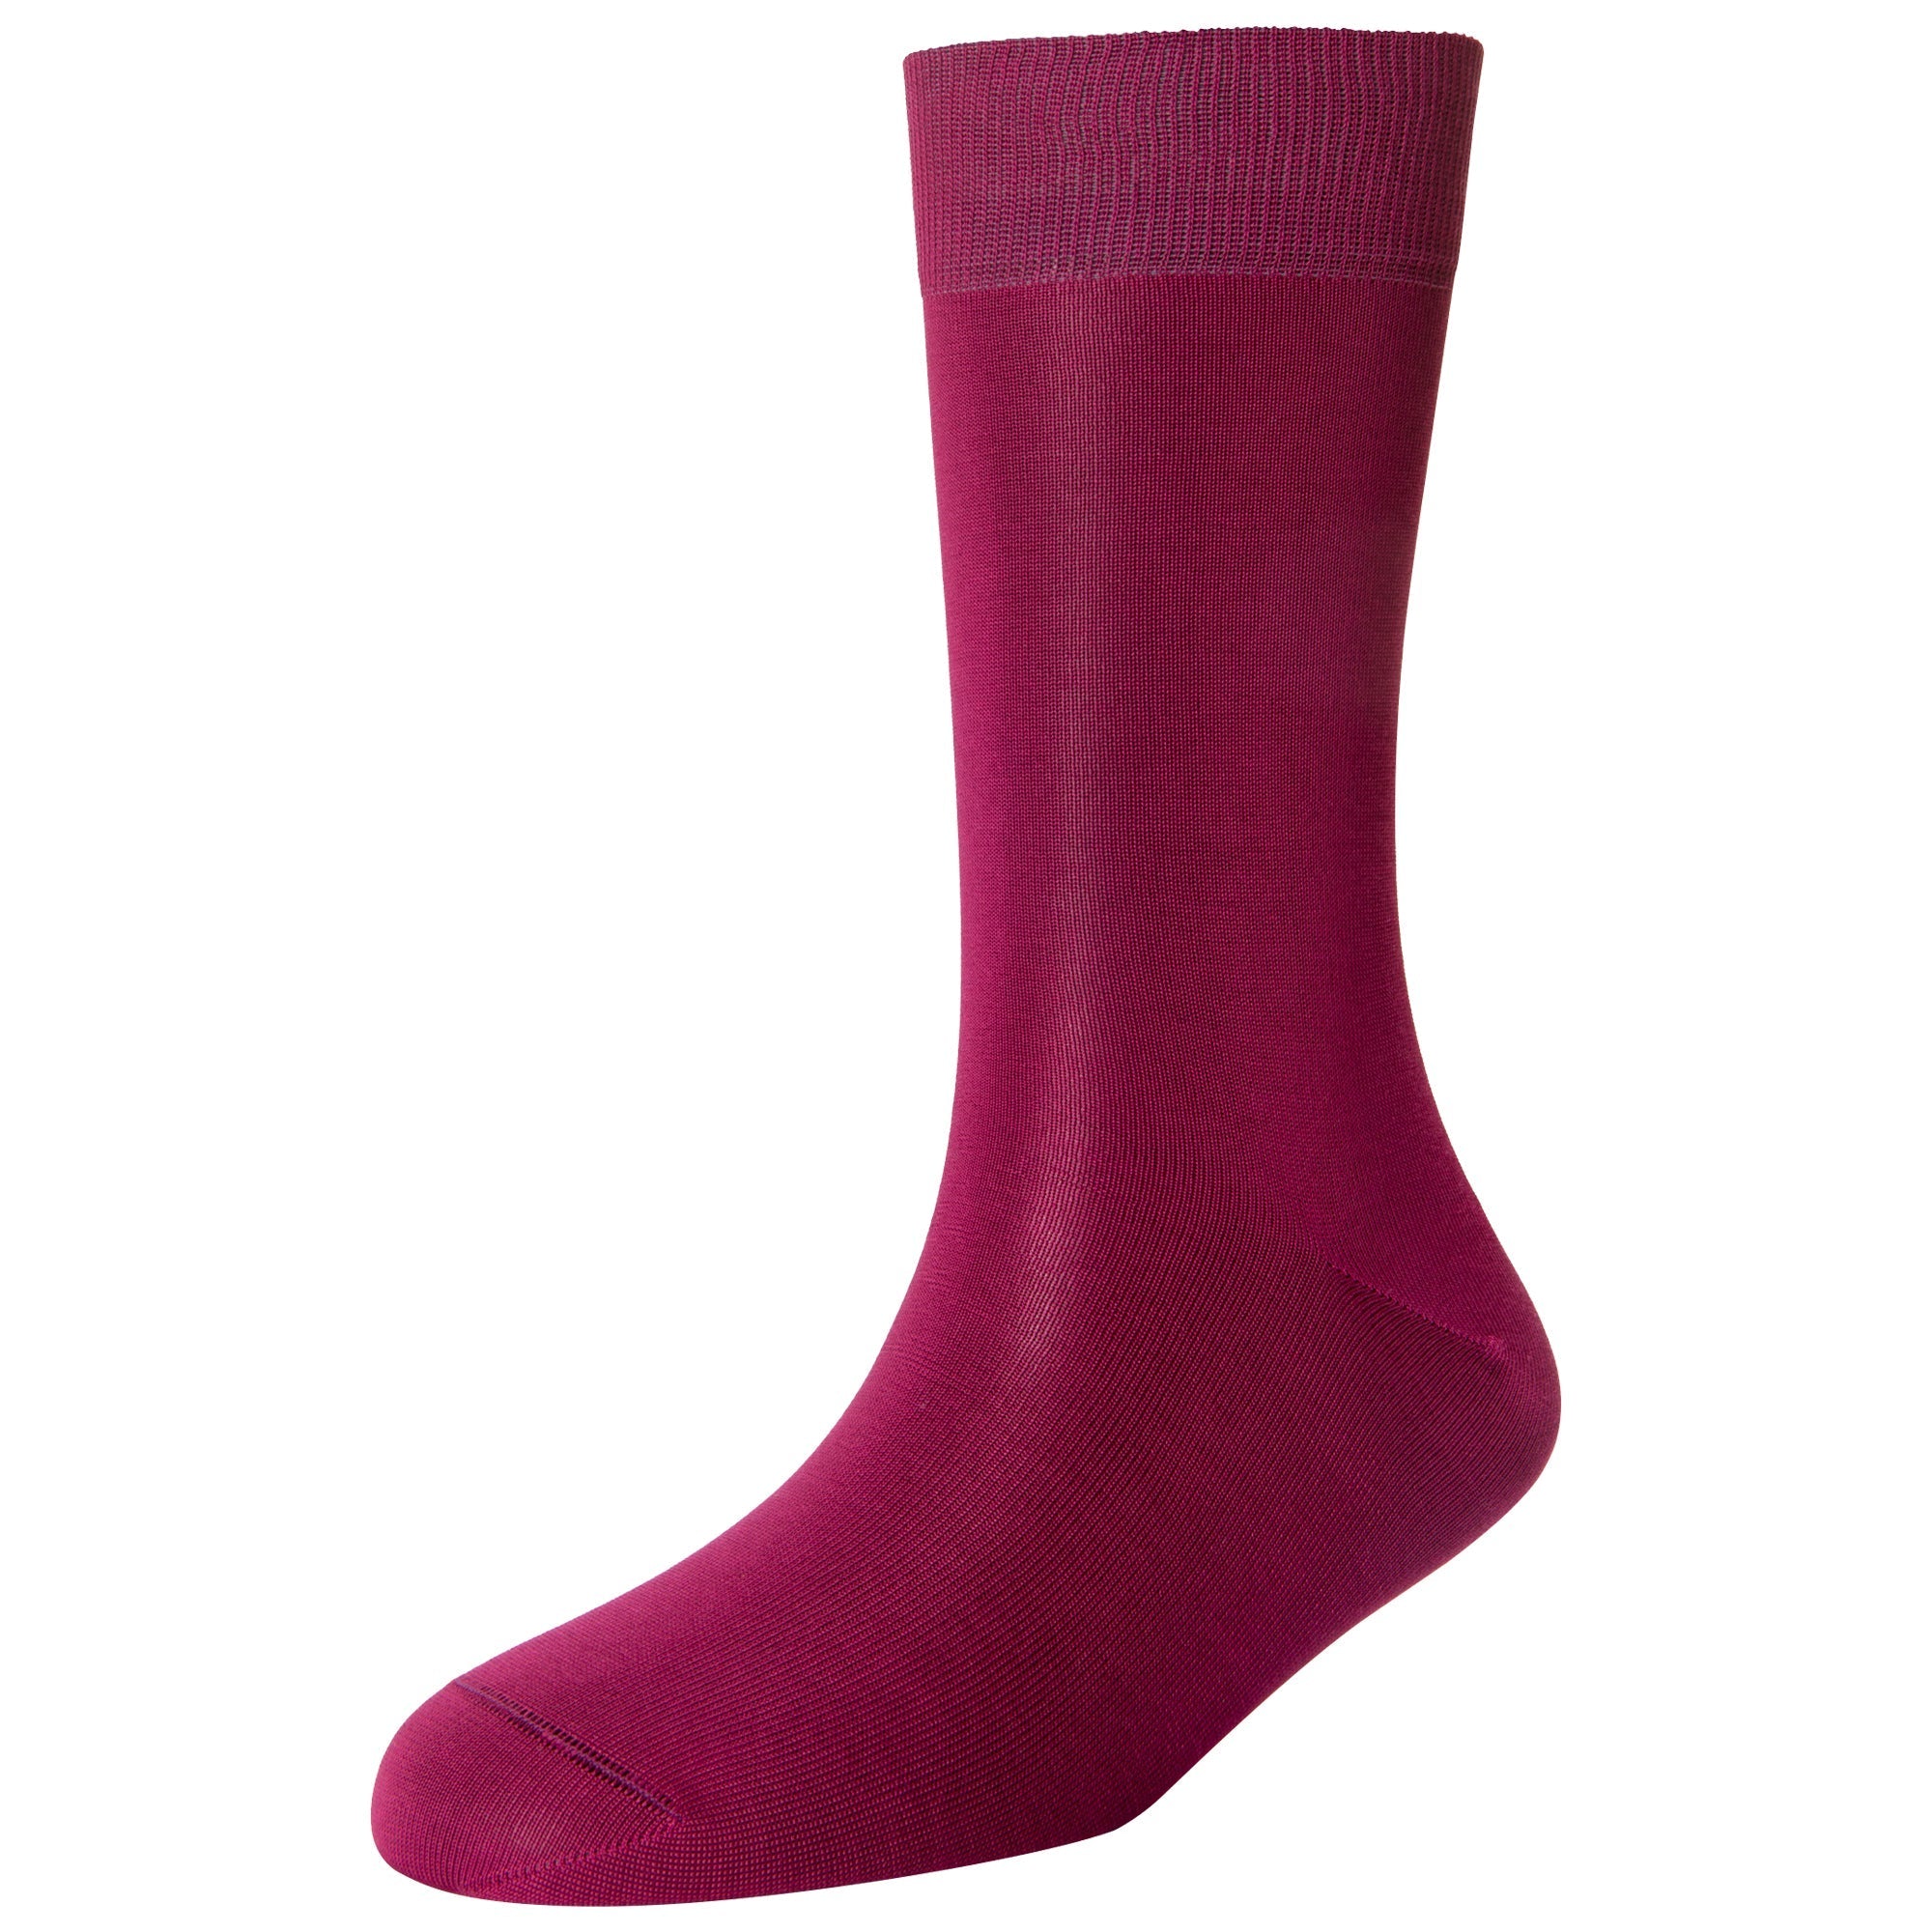 Men's Fine Standard Length Socks